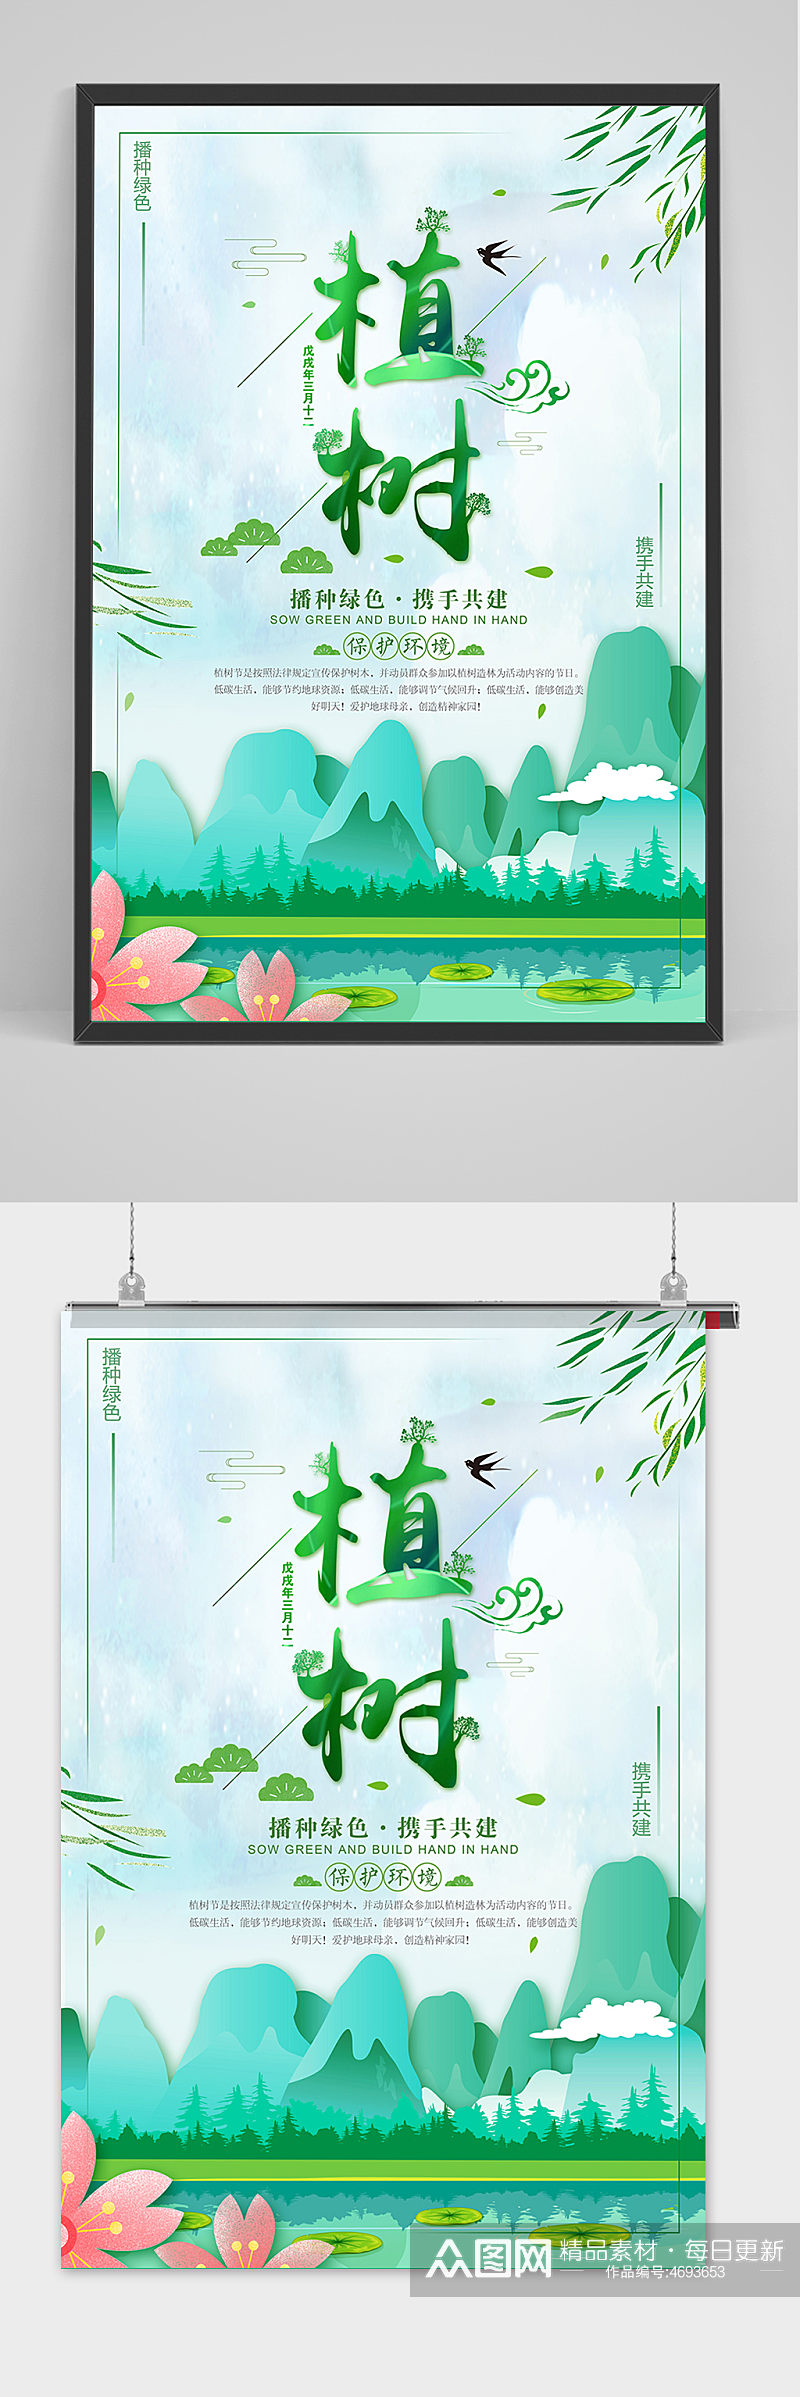 312植树节绿色中国风公益环保宣传海报素材